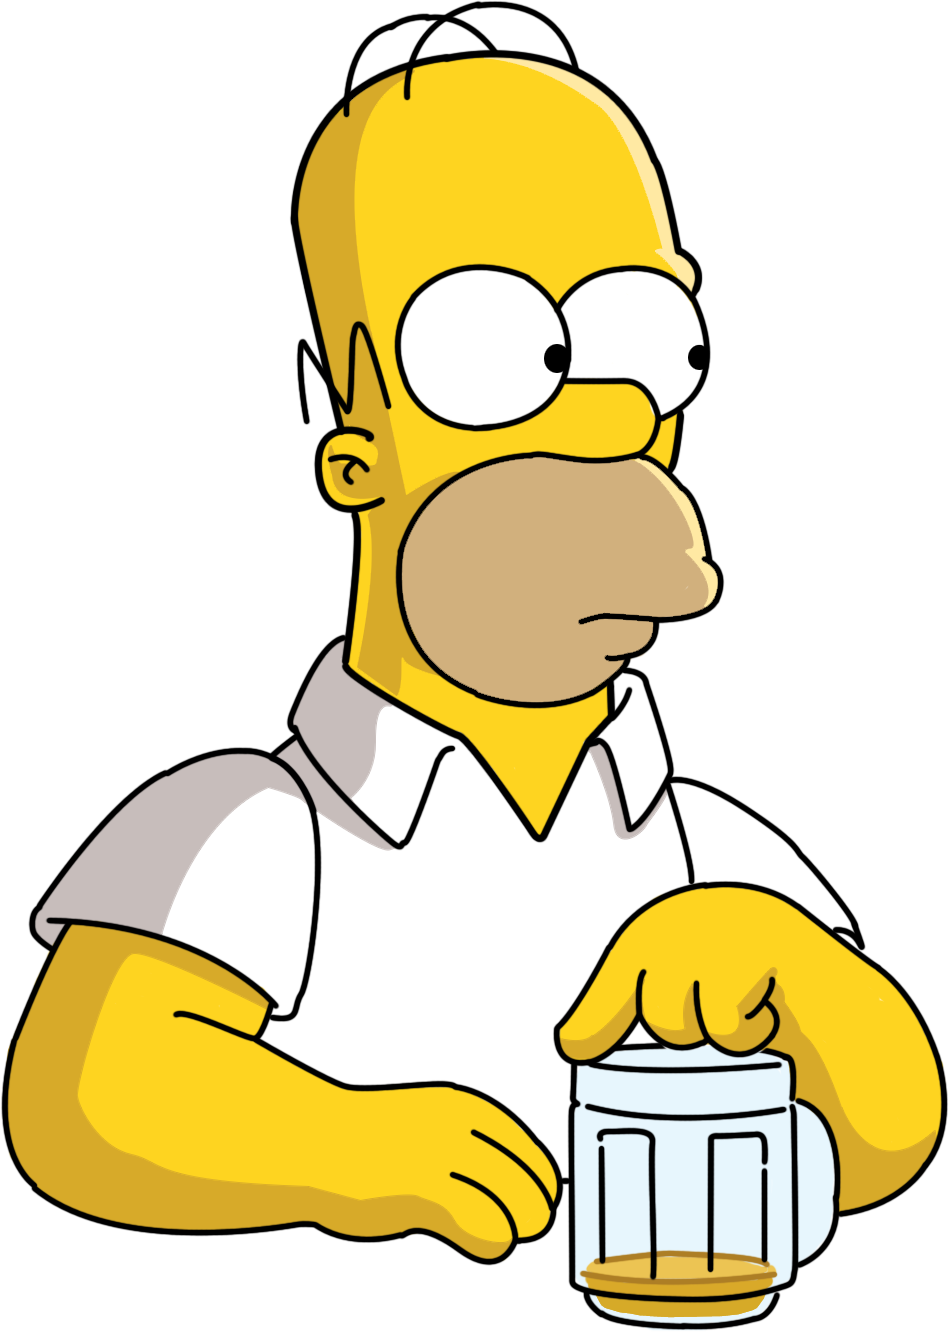 Homer bebiendose una cerveza